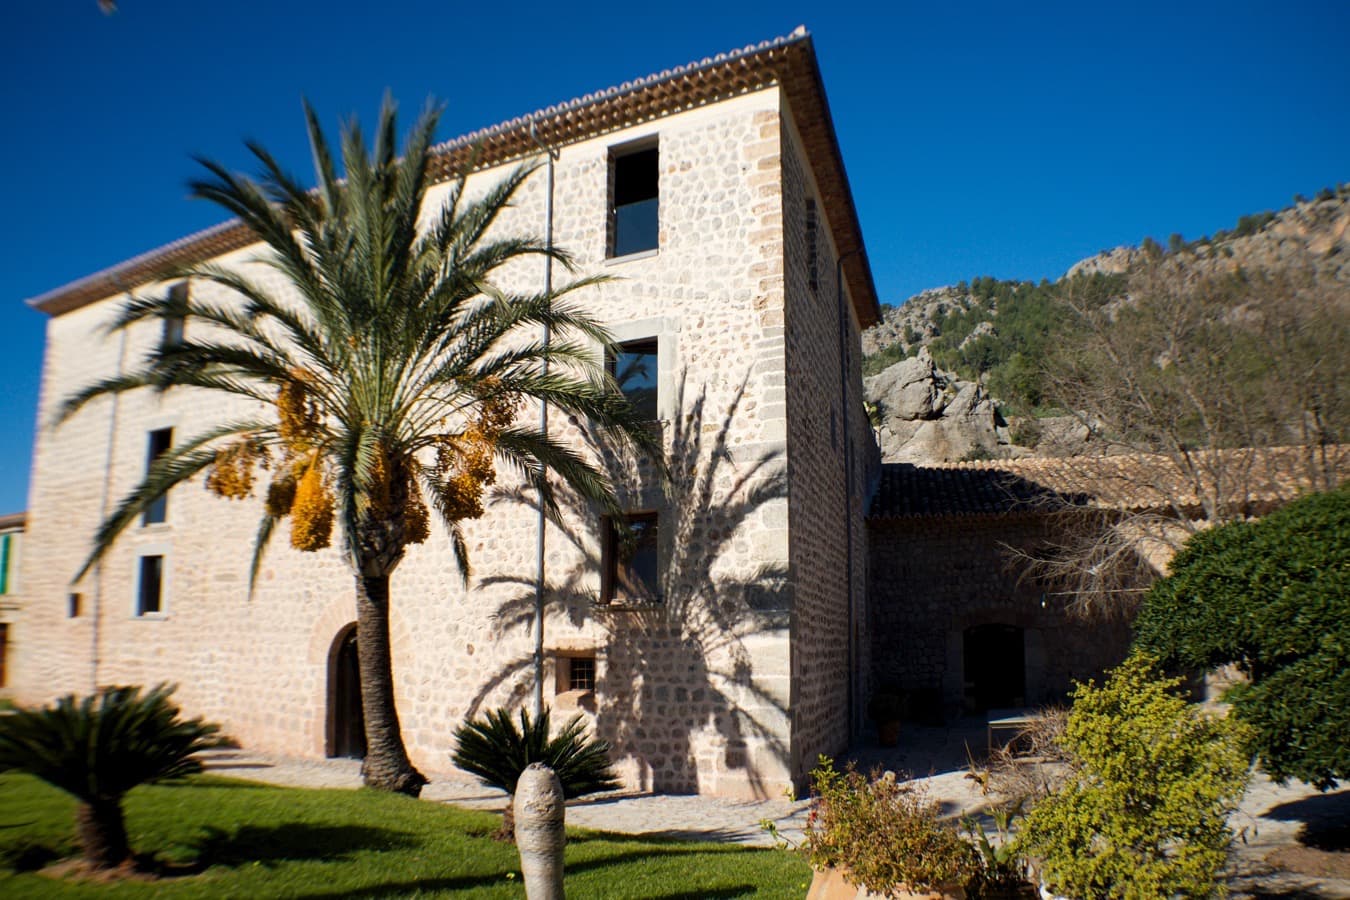 CA S'HEREU 26 Island Homes Mallorca